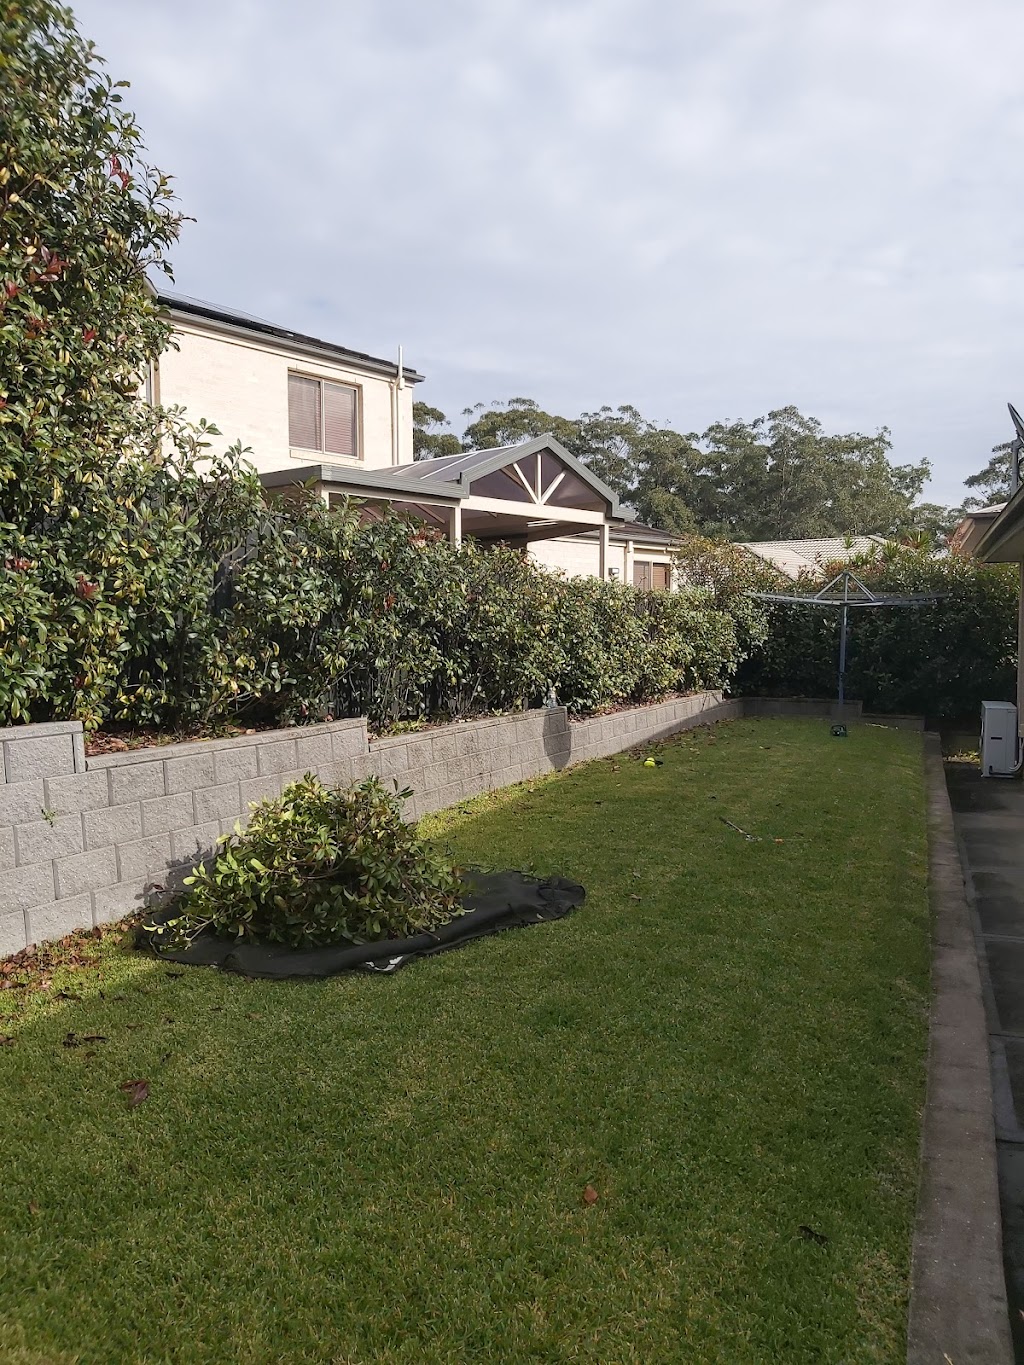 KJM Tree Garden and Cleaning | Adam St, Narara NSW 2250, Australia | Phone: 0410 083 150